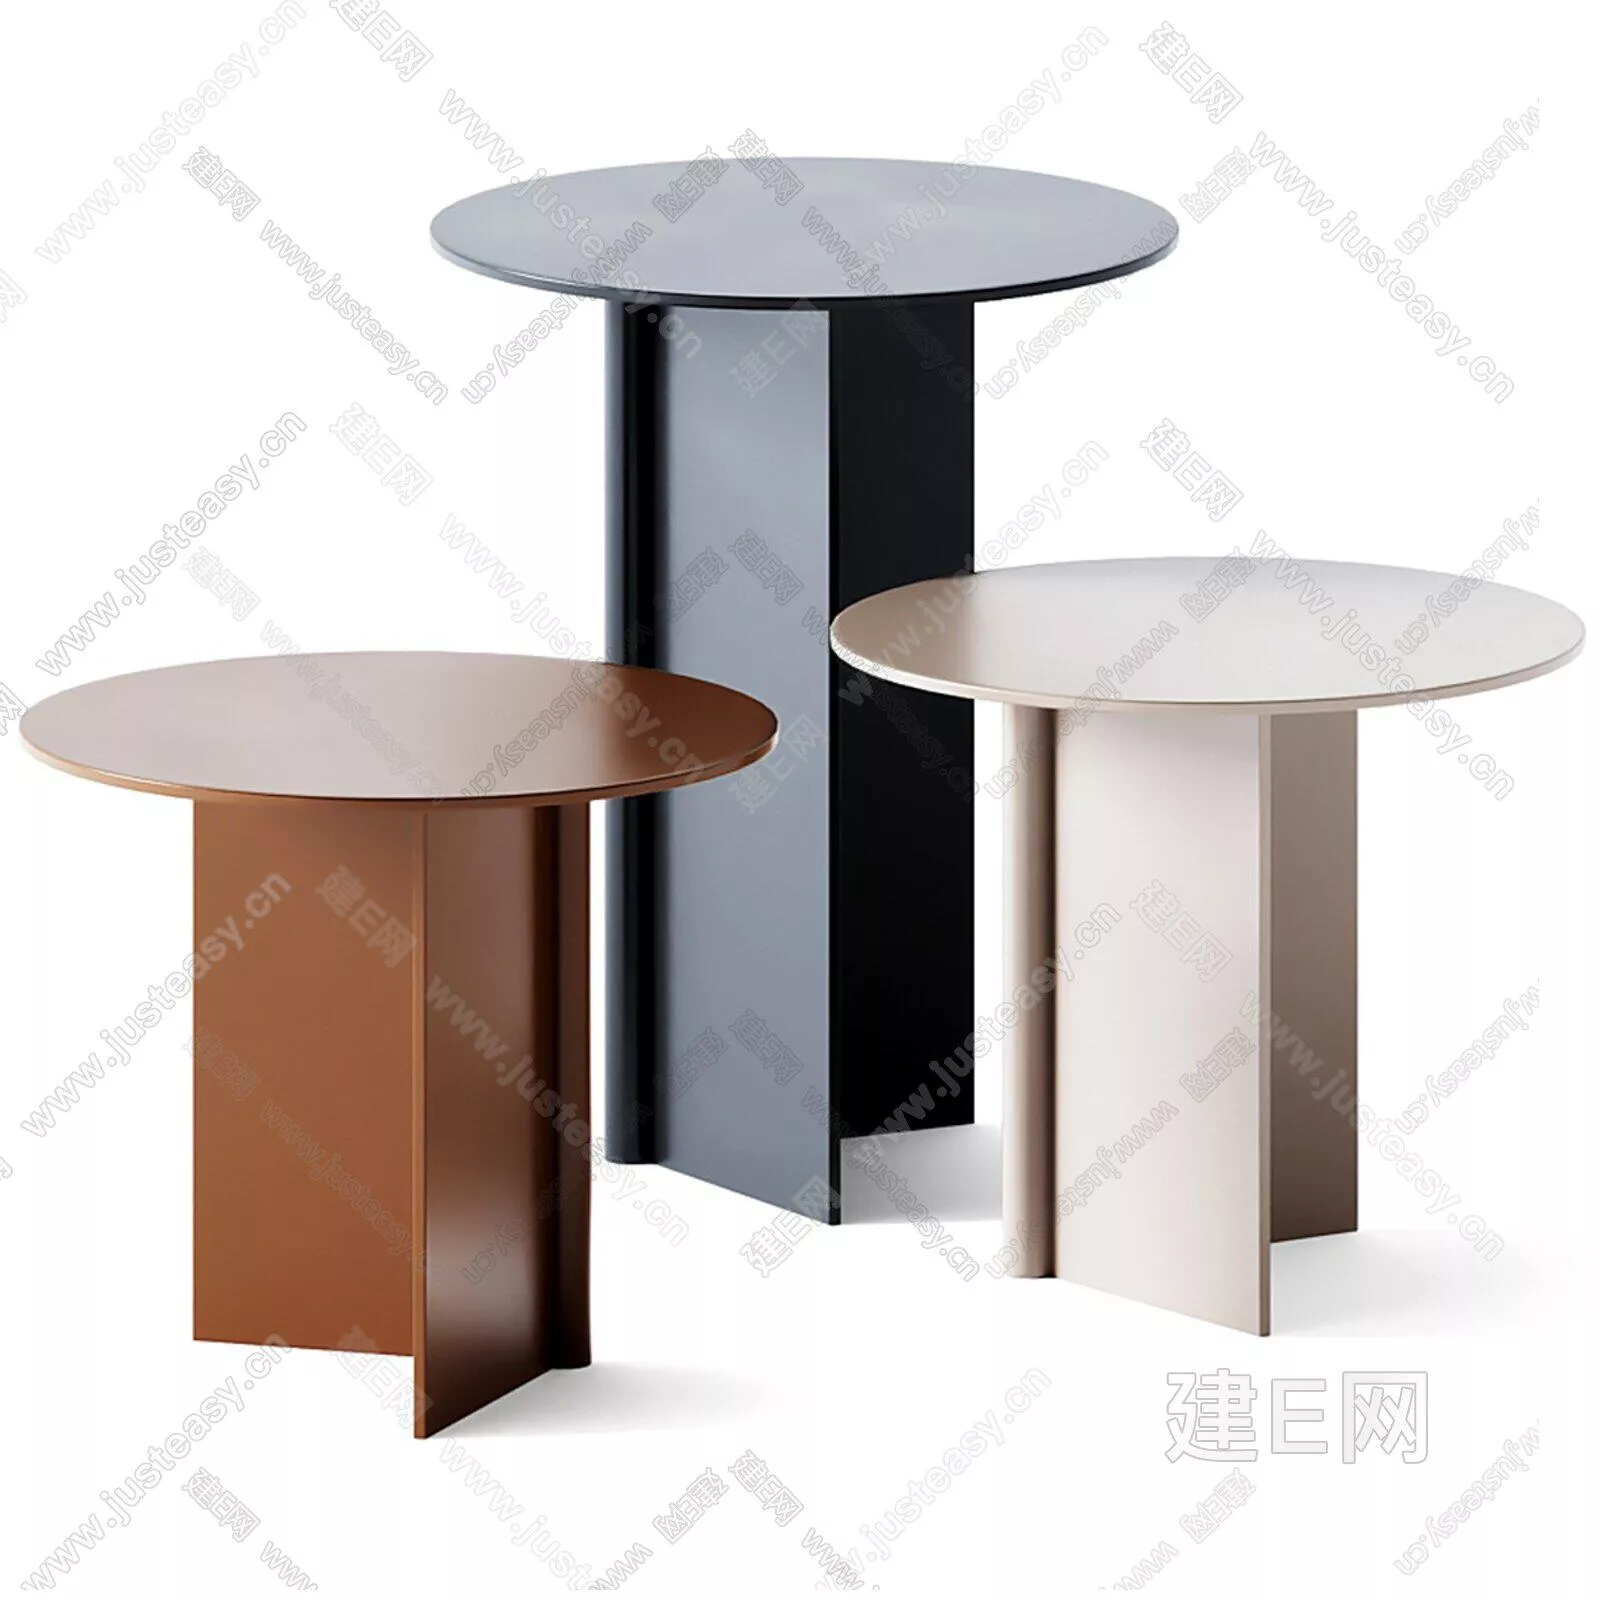 MODERN SIDE TABLE - SKETCHUP 3D MODEL - ENSCAPE - 104286446